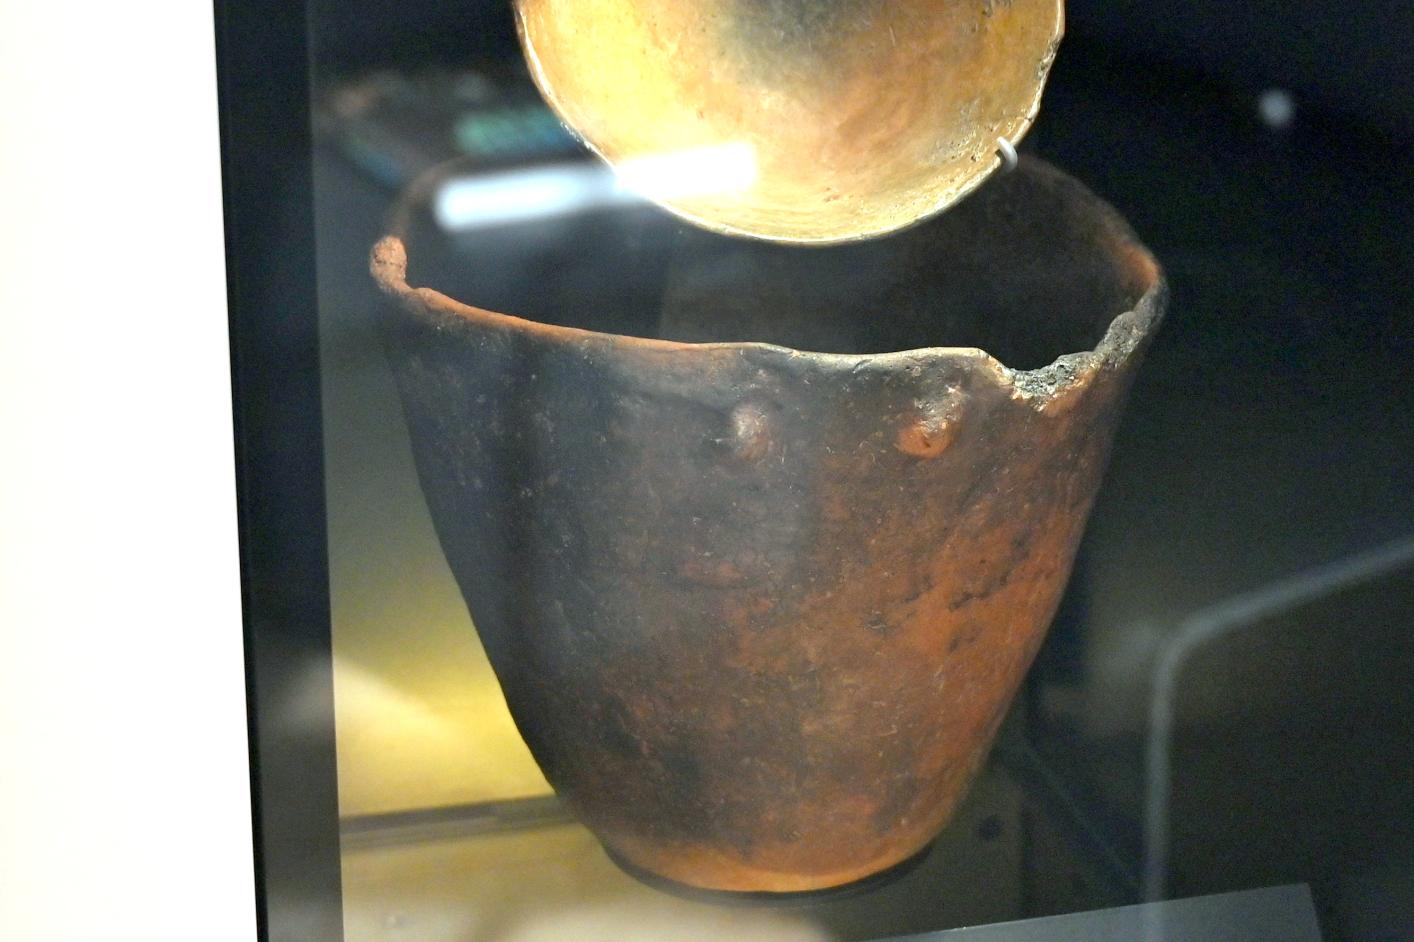 Kochtopf, Neolithikum (Jungsteinzeit), 5500 - 1700 v. Chr., 3800 - 3600 v. Chr.